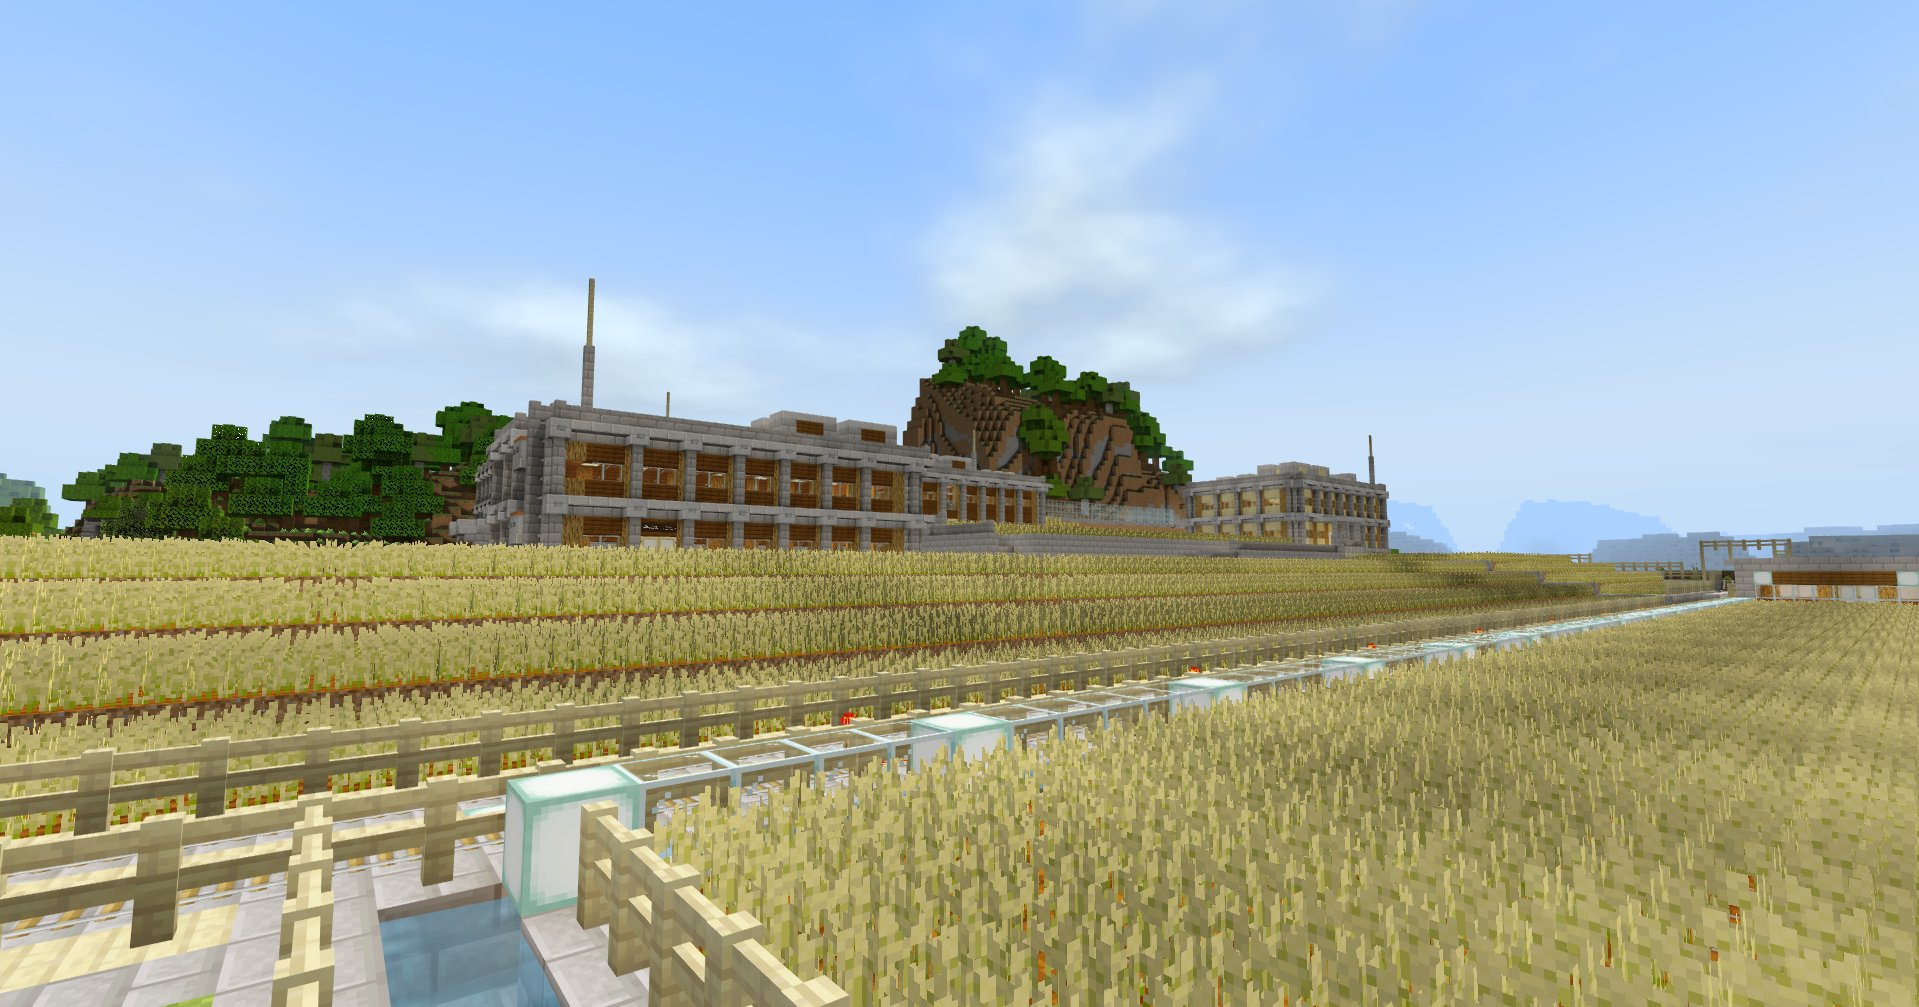 6g Creator W 絶景かな 小麦畑の中に建物があるのがなんか好き 好きな風景のうちの1枚 Minecraft建築コミュ マイクラ マインクラフト Minecraft T Co Gojn1la4kq Twitter